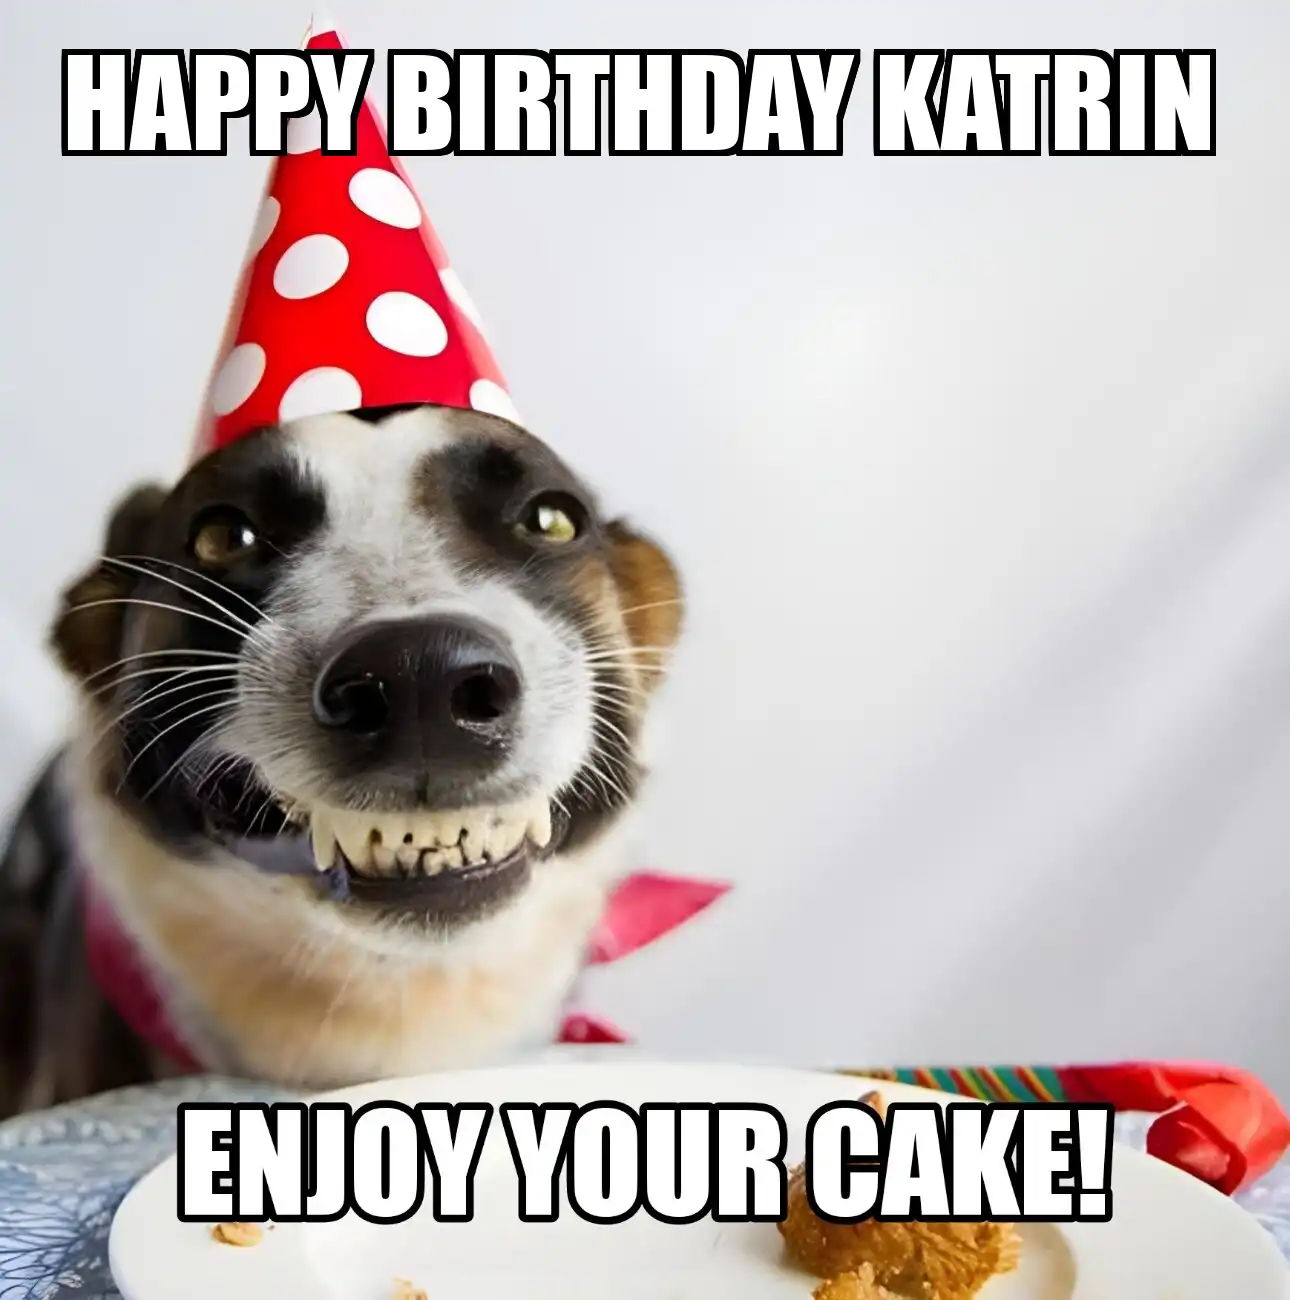 Happy Birthday Katrin Enjoy Your Cake Dog Meme